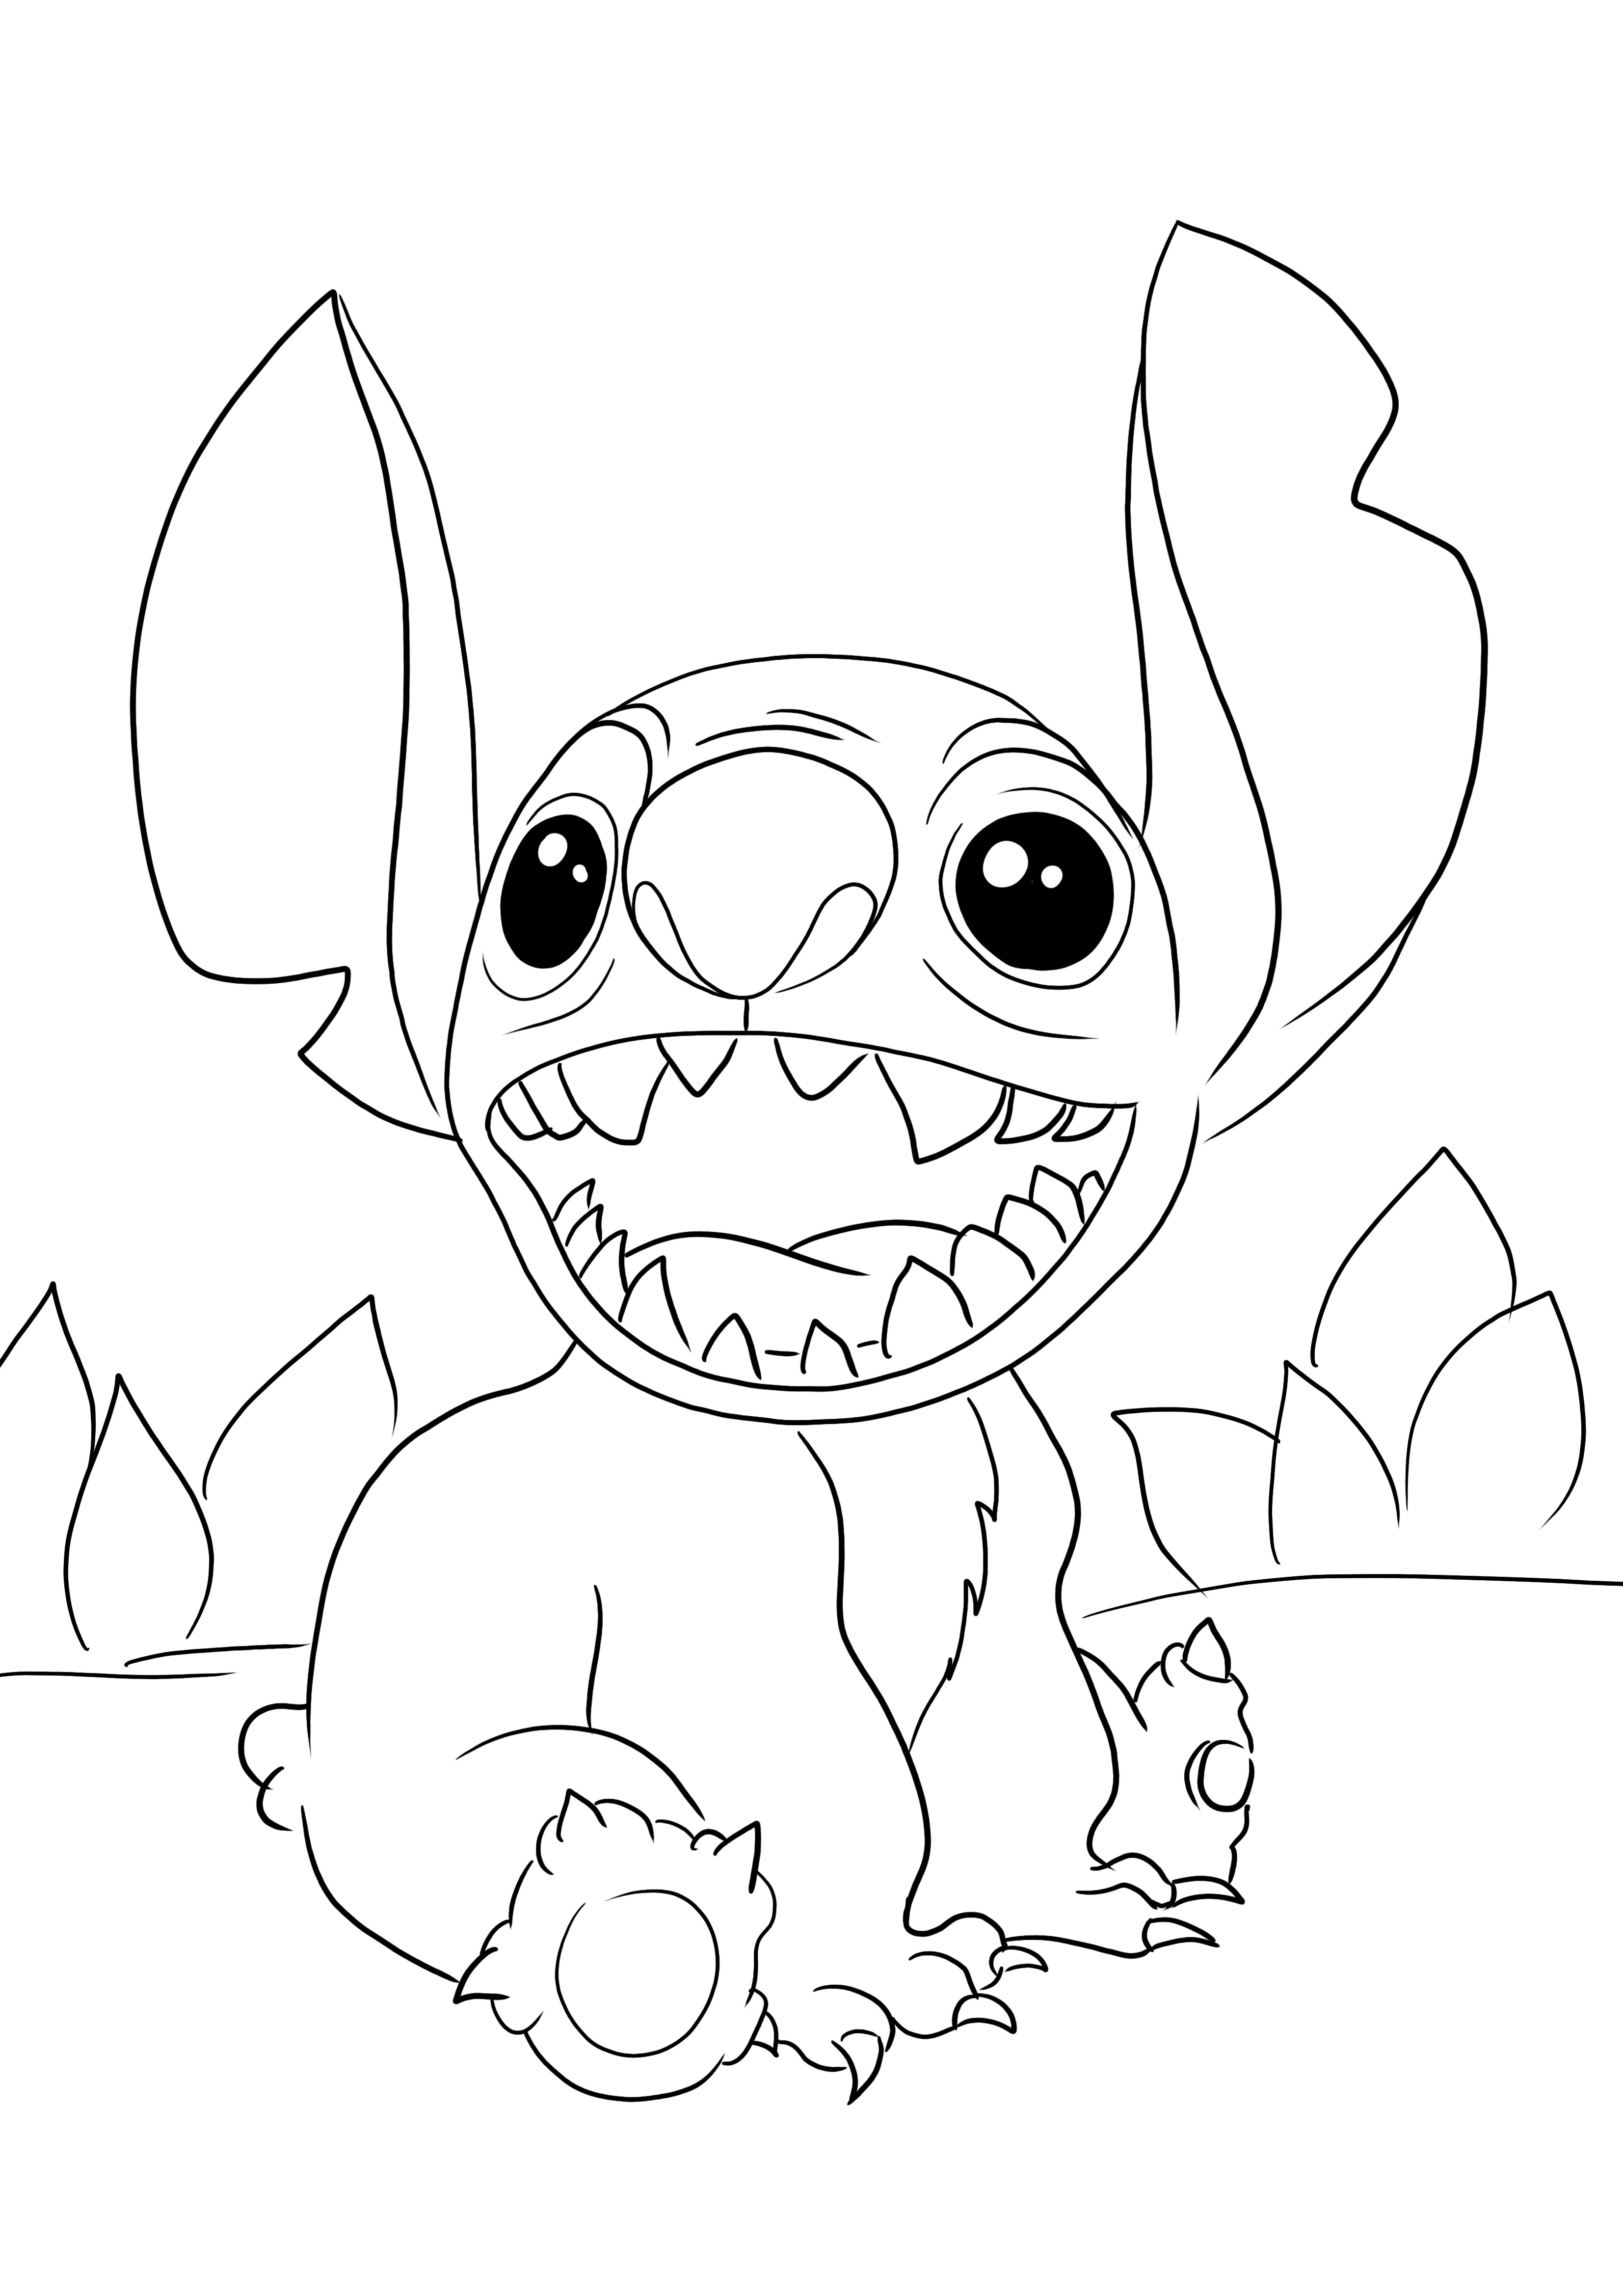 Dibujo para colorear gratis de Cute Stitch de Lilo&Stitch para descargar y colorear con diversión